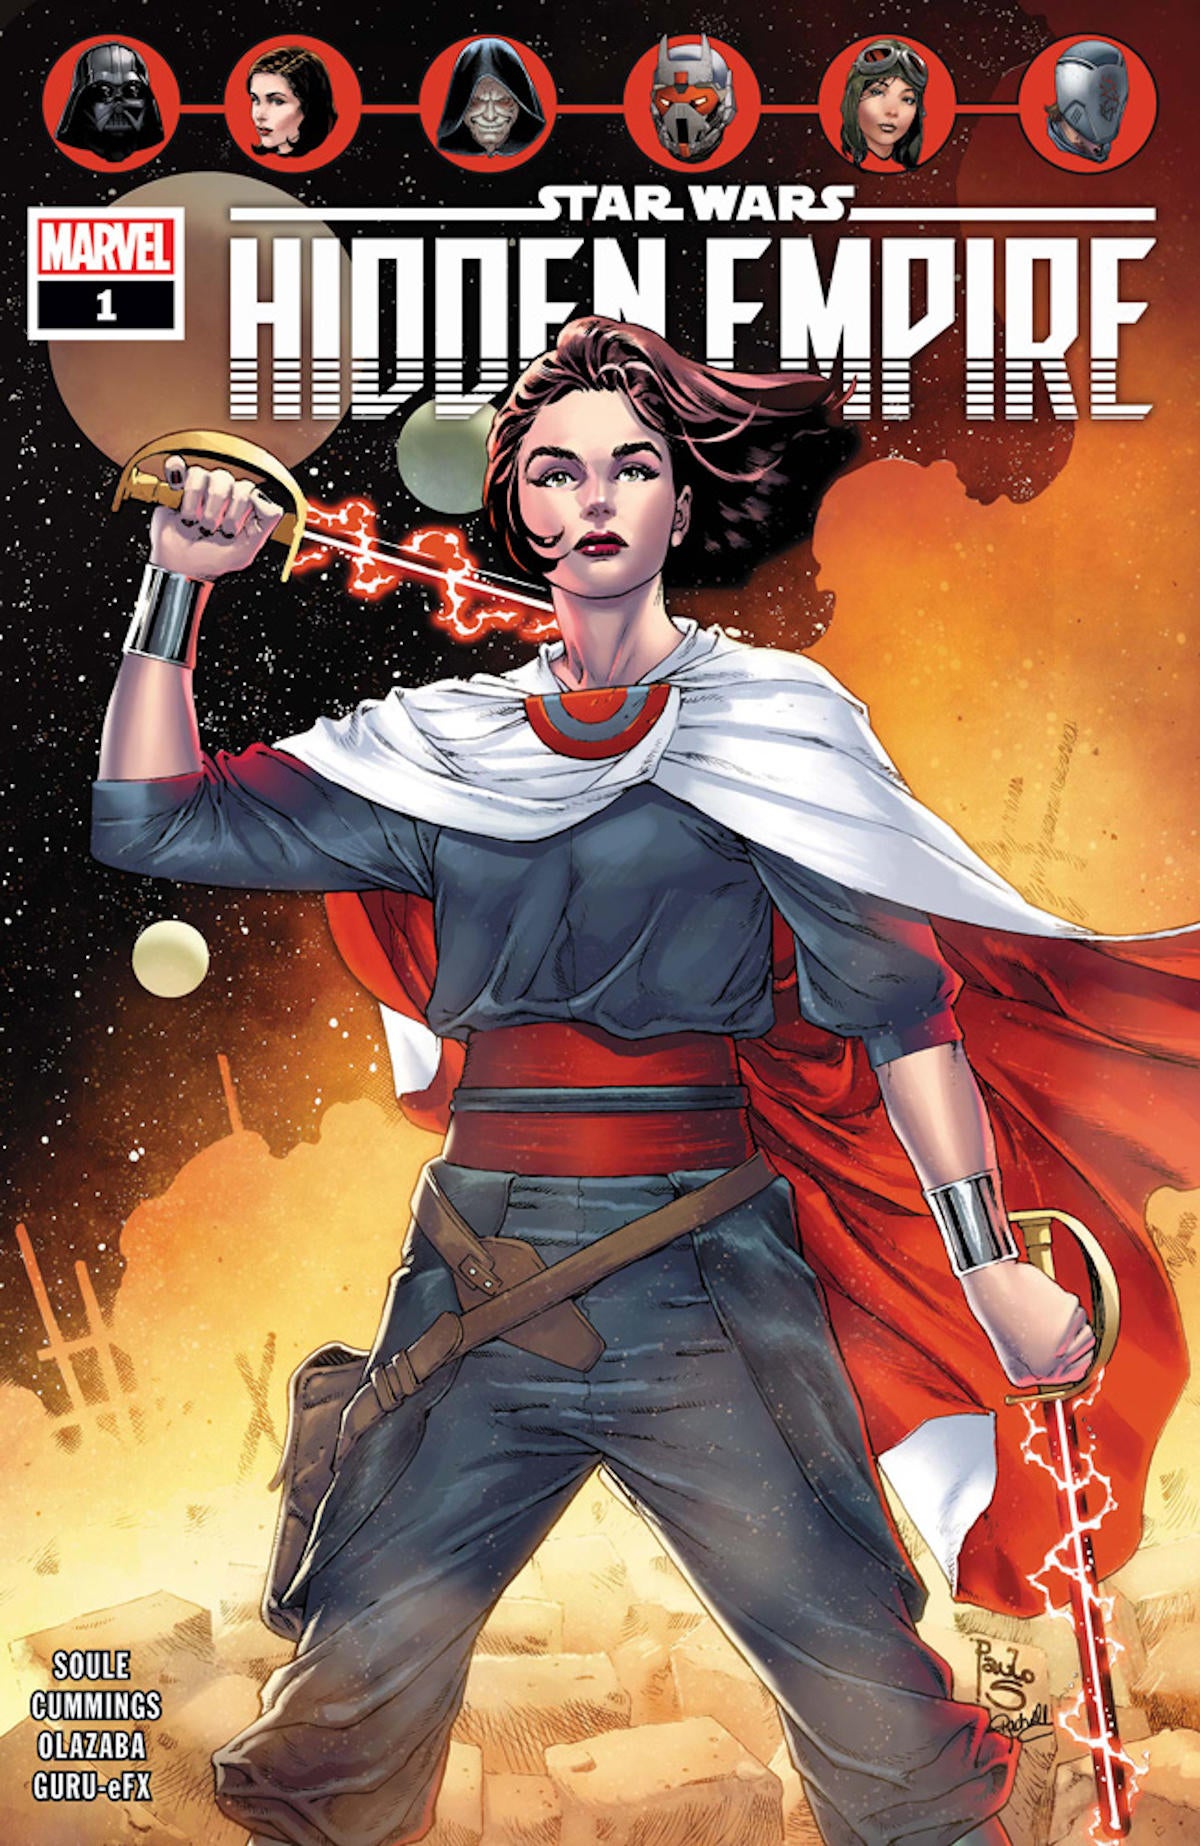 marvel-star-wars-hidden-empire-1-cover-art.jpg